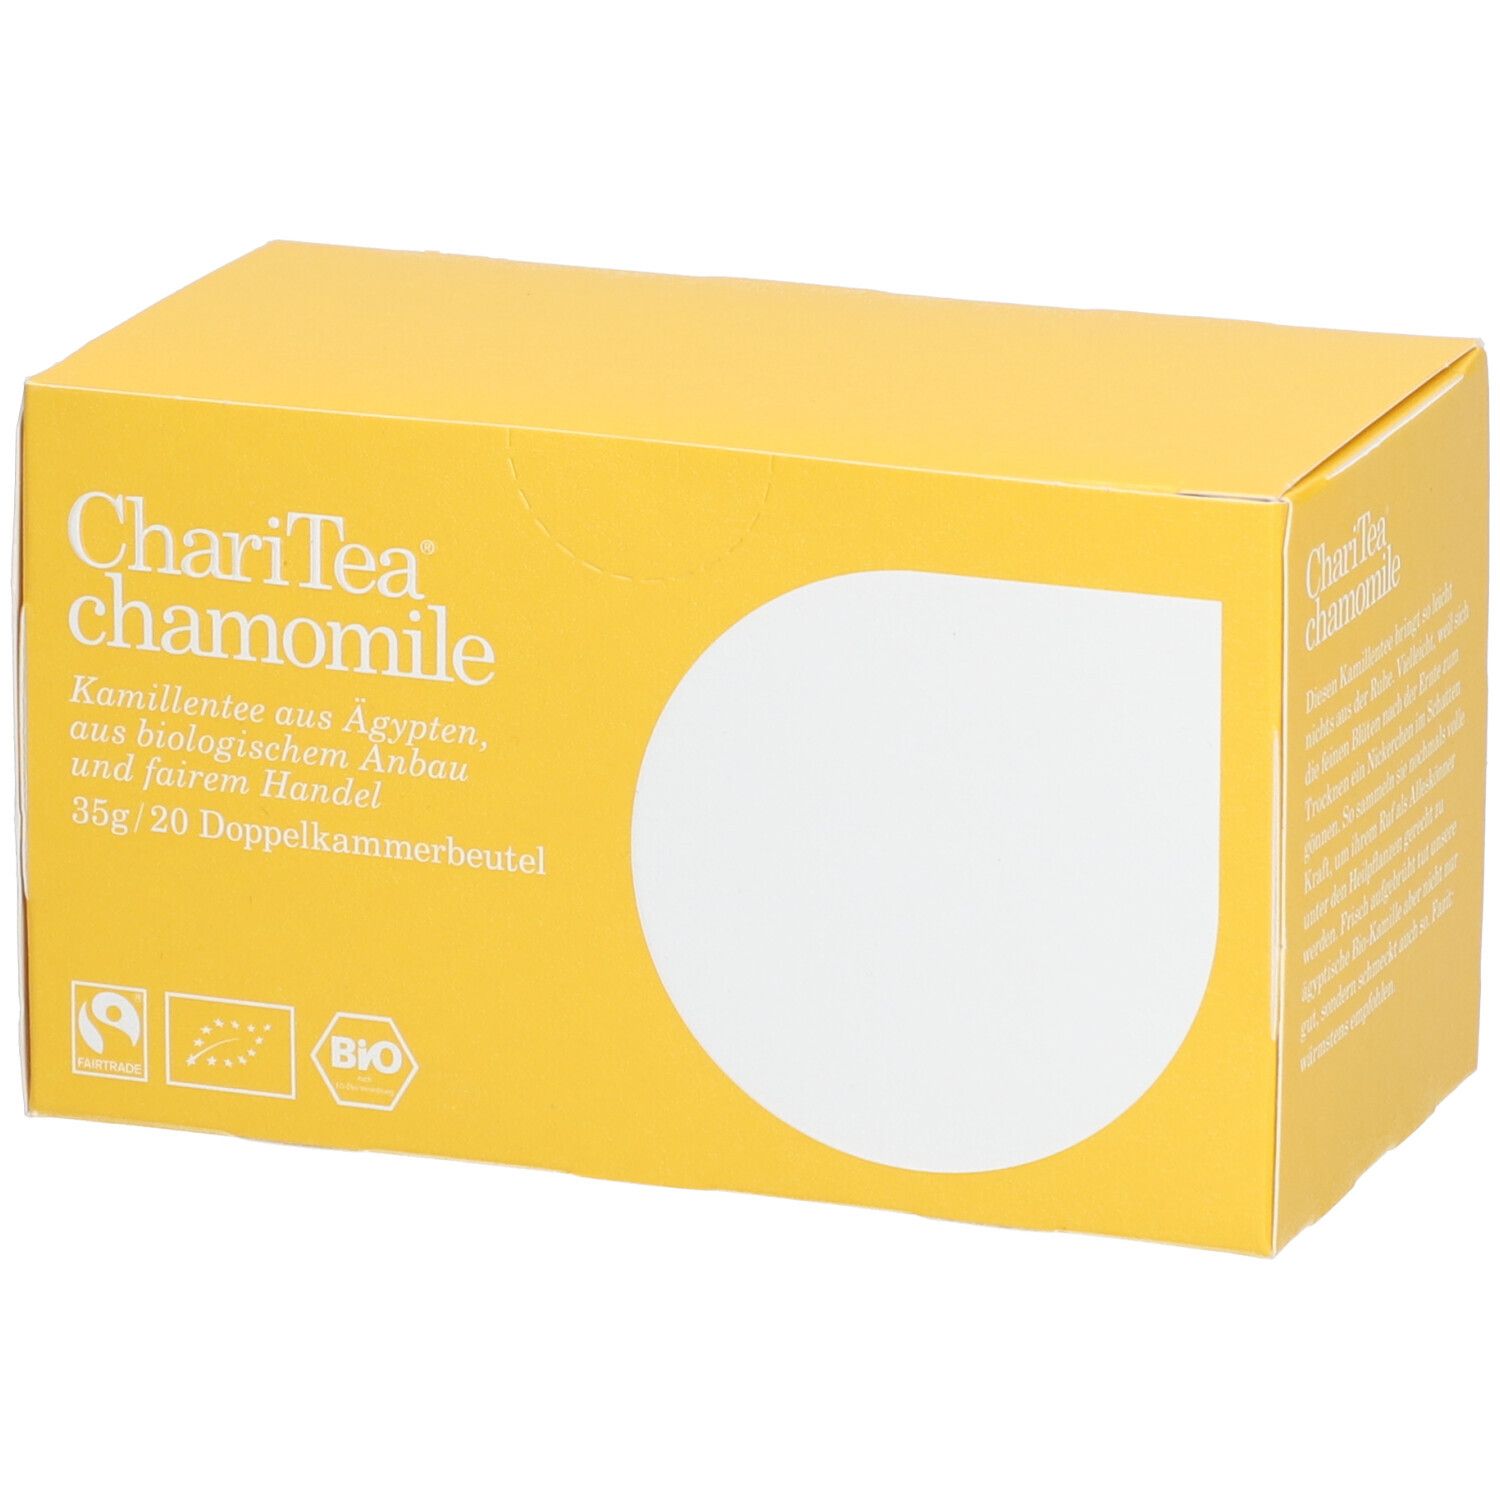 Image of ChariTea® chamomile